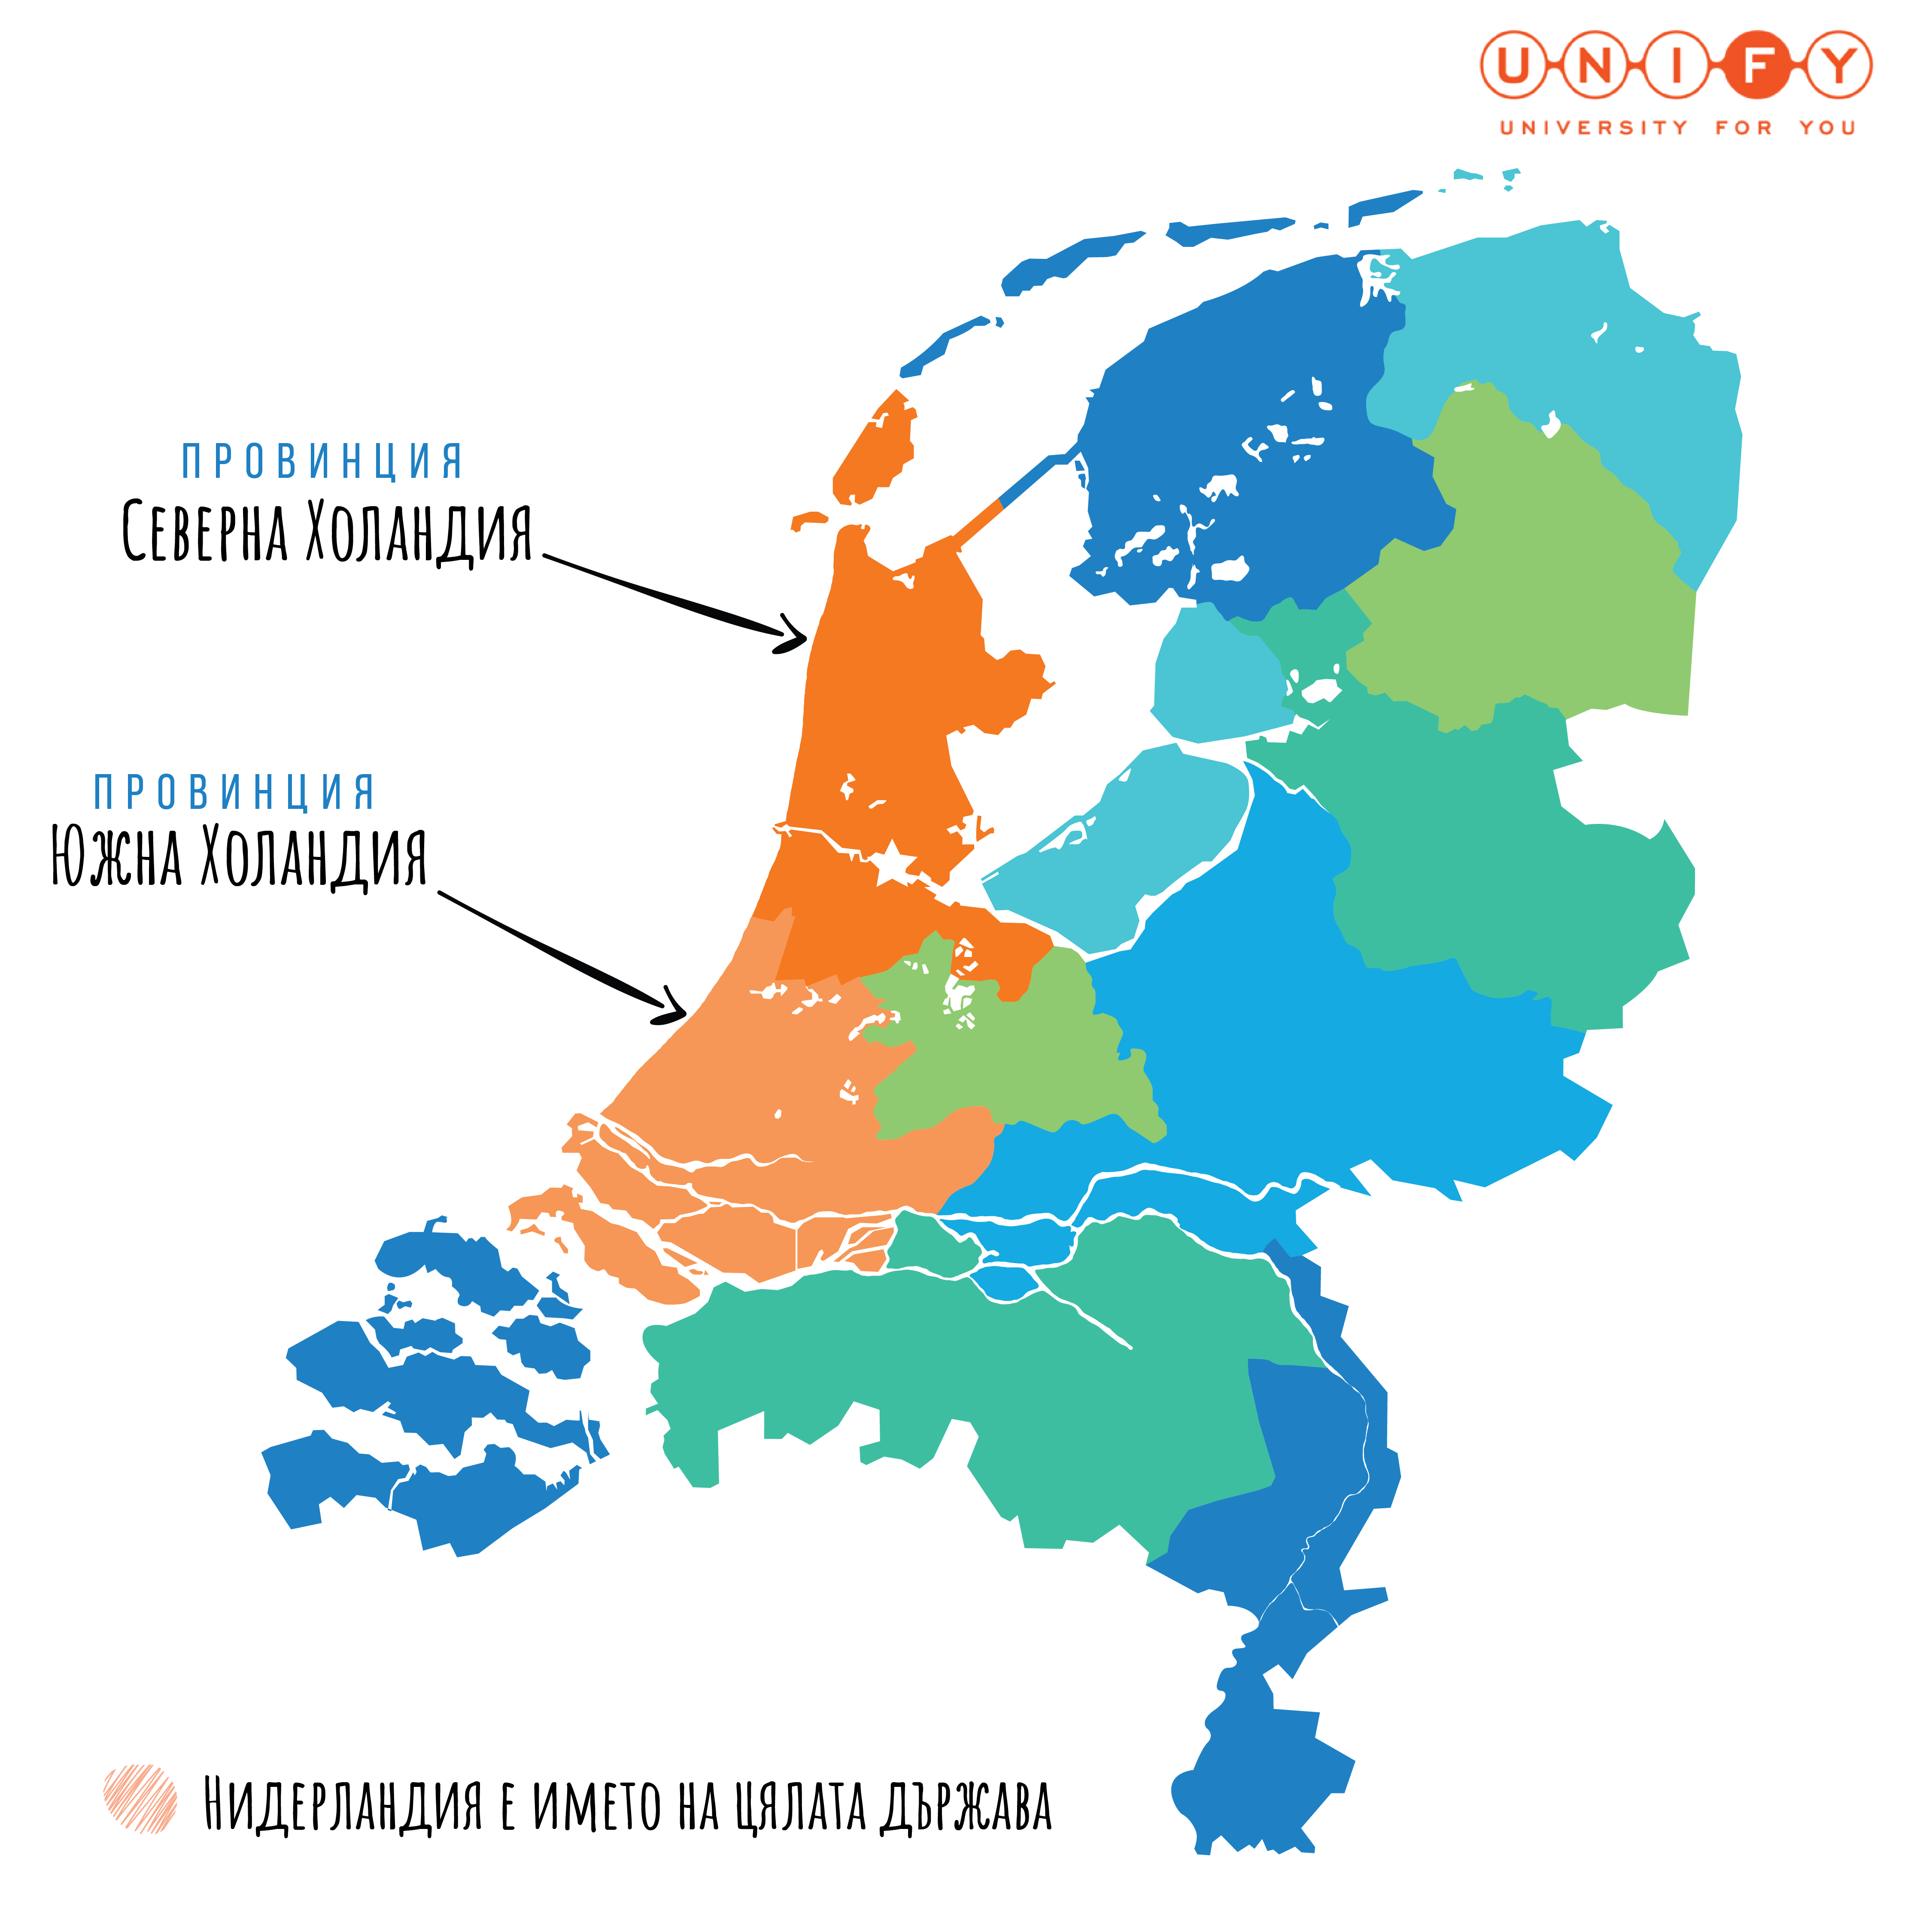 Холандия или Нидерландия? Как е правилно да се назовава?